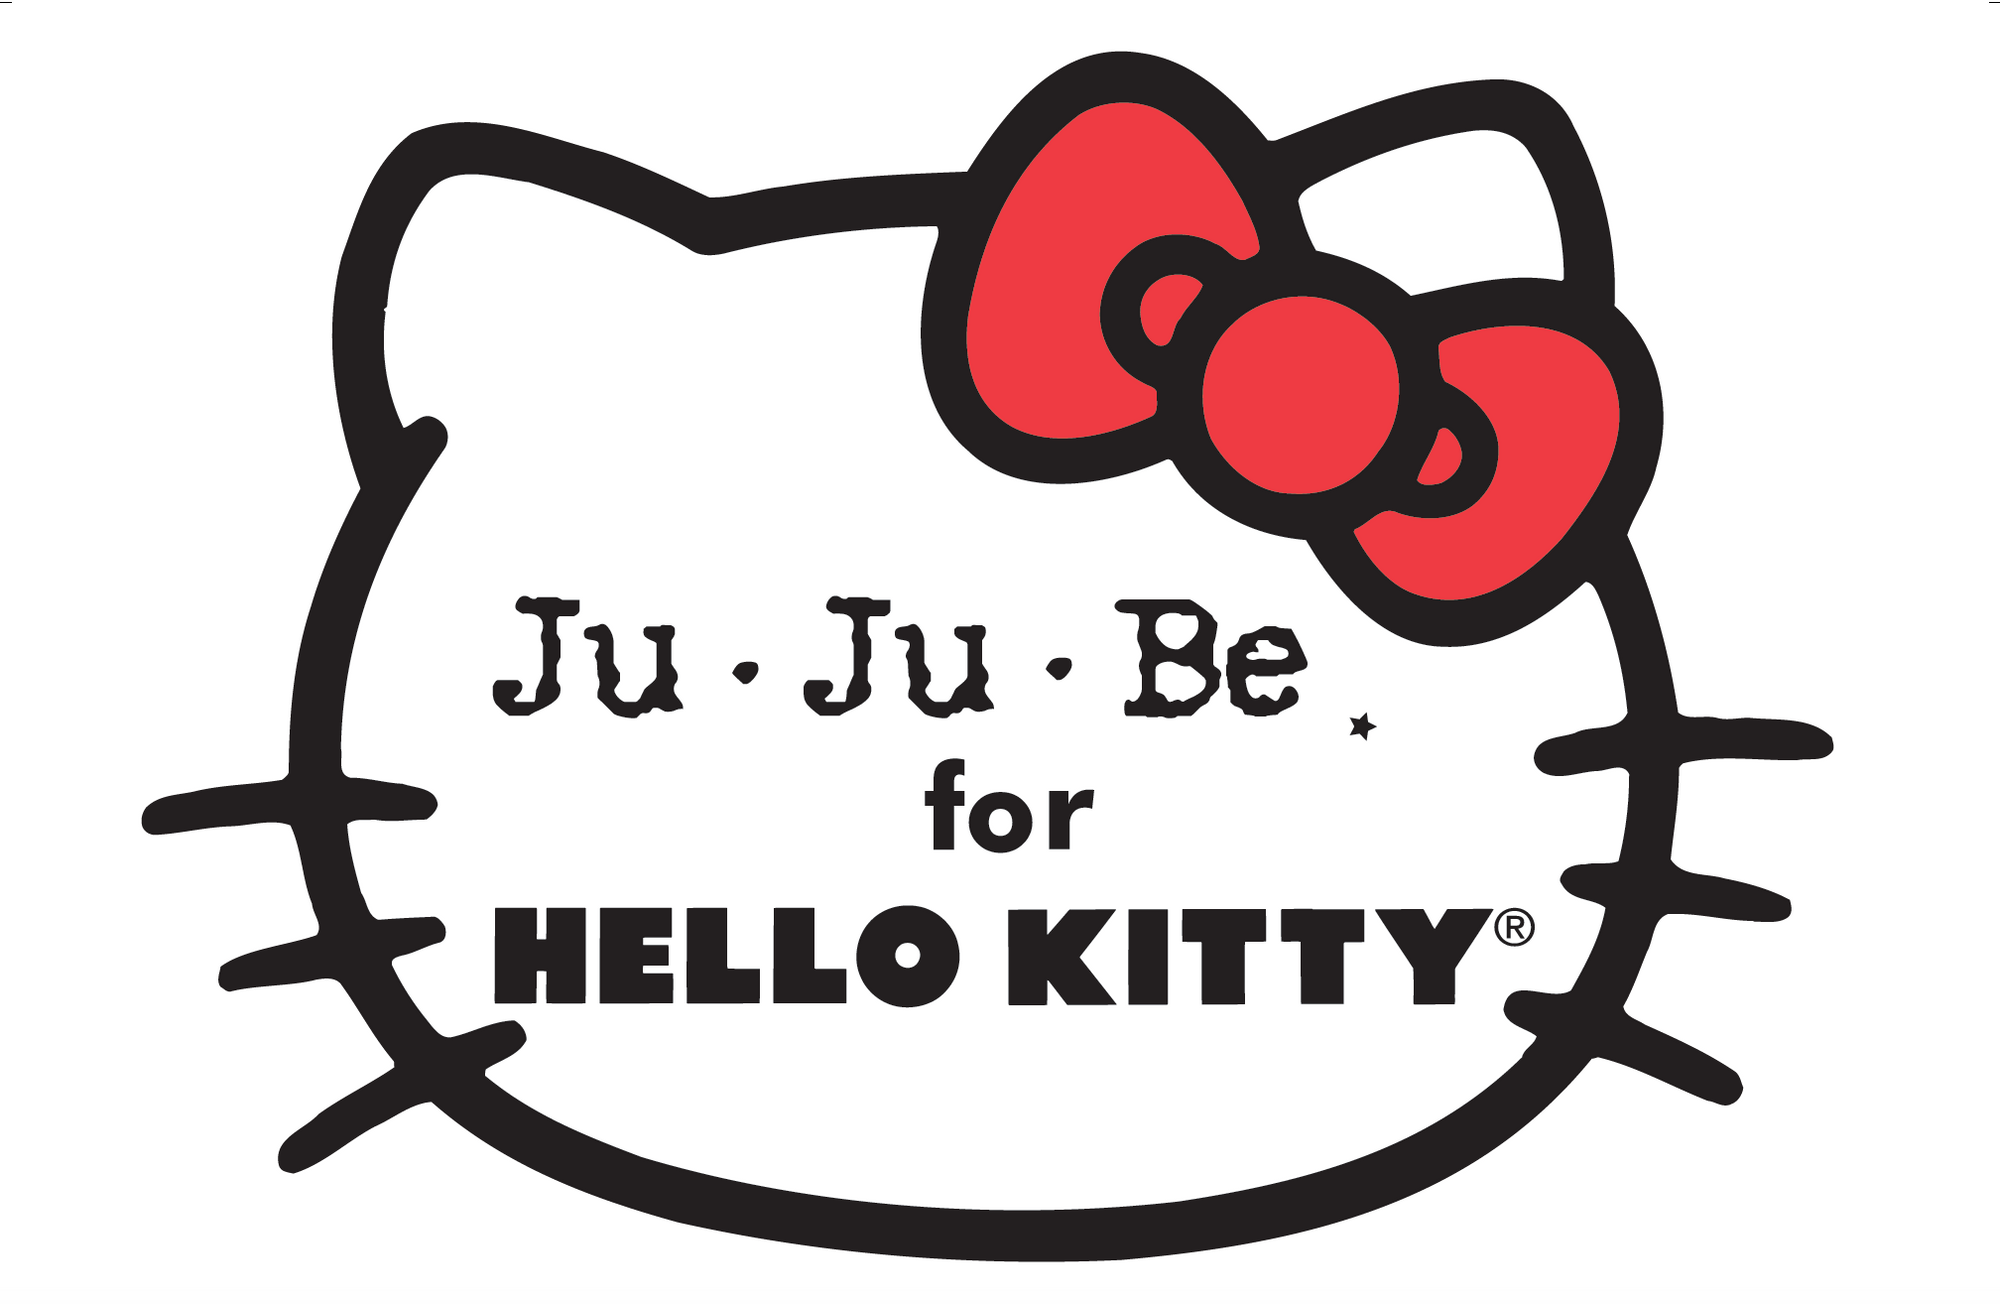 Happy Birthday Hello Kitty!!